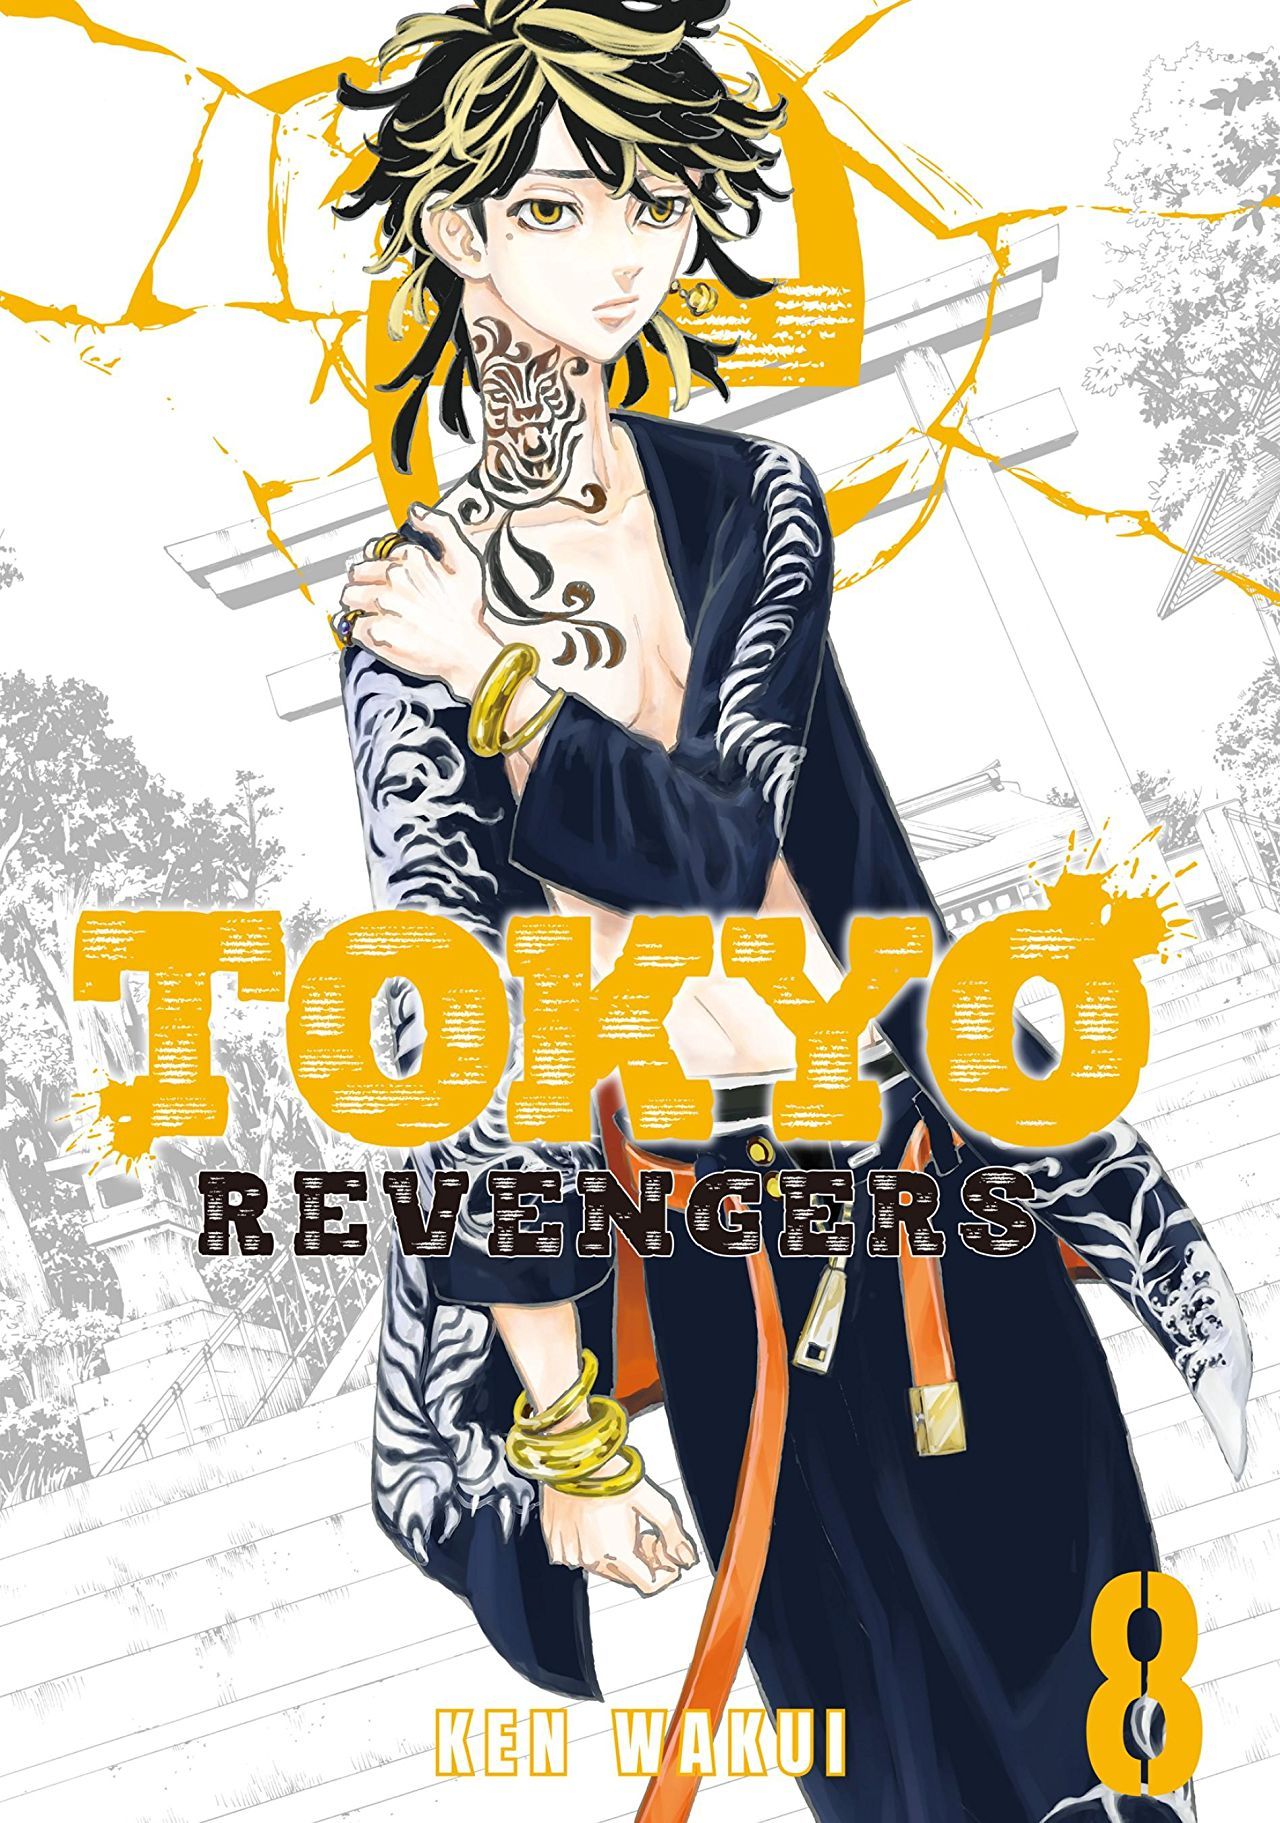 Tokyo Revengers Wallpaper Free Tokyo Revengers Background